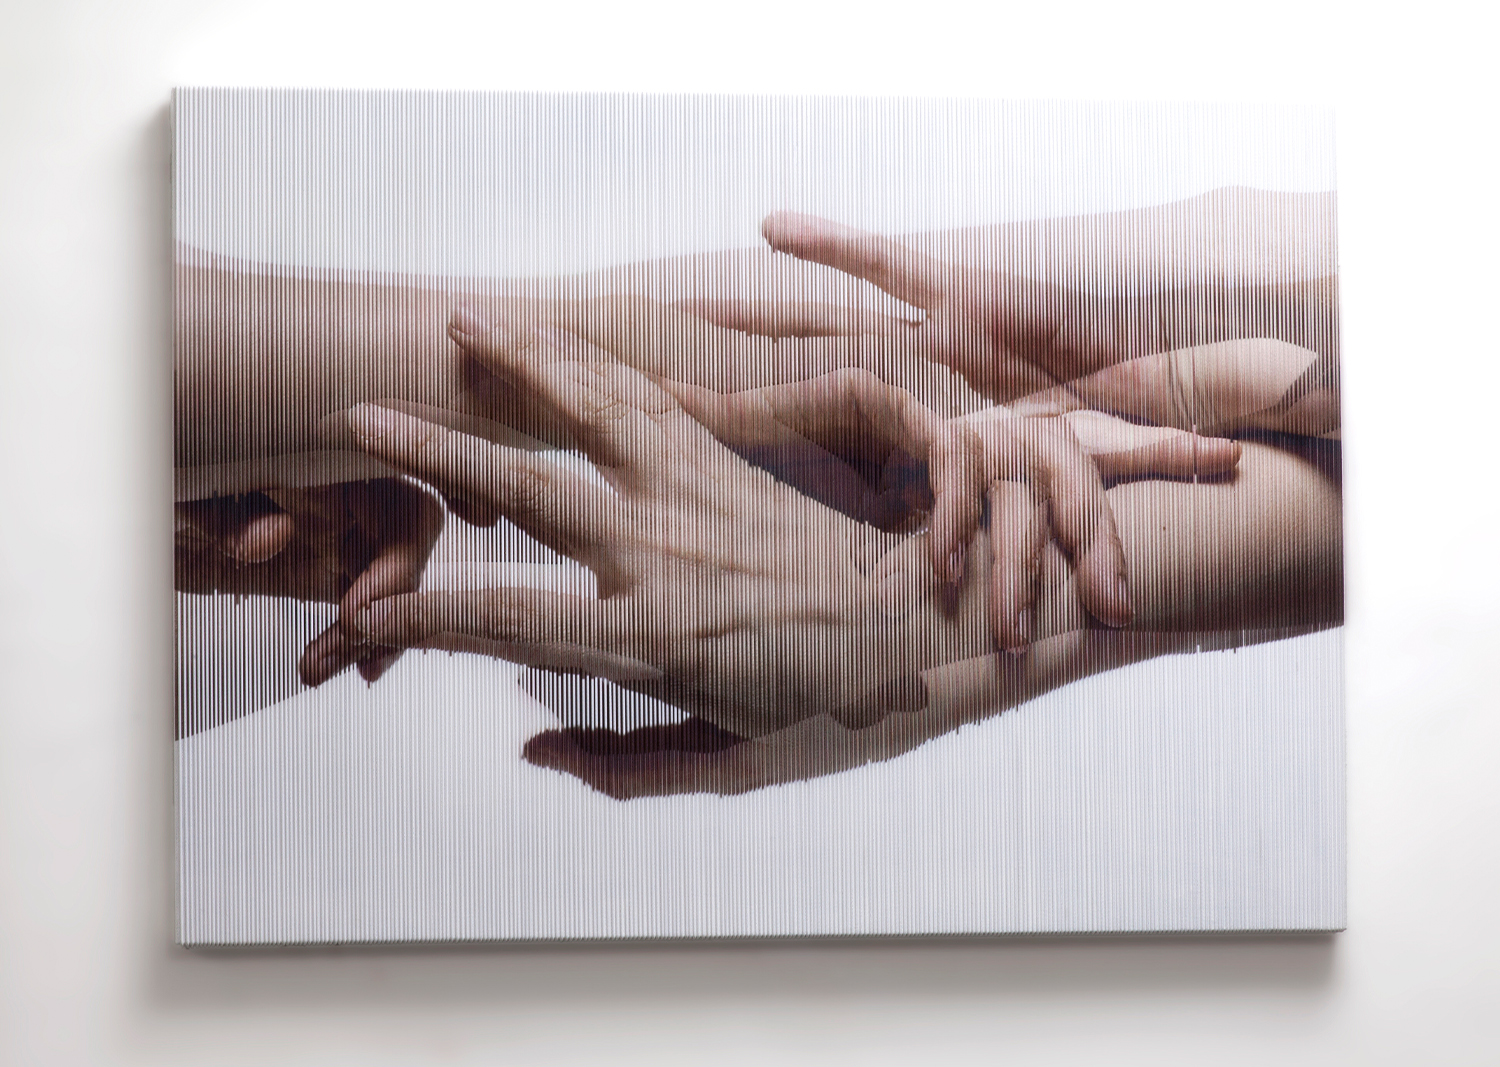 홍성철, Strings hands_004, mixed media, 91 x 65 (cm), 2014@Hong Sungchul, Strings hands_004, mixed media, 91 x 65 (cm), 2014